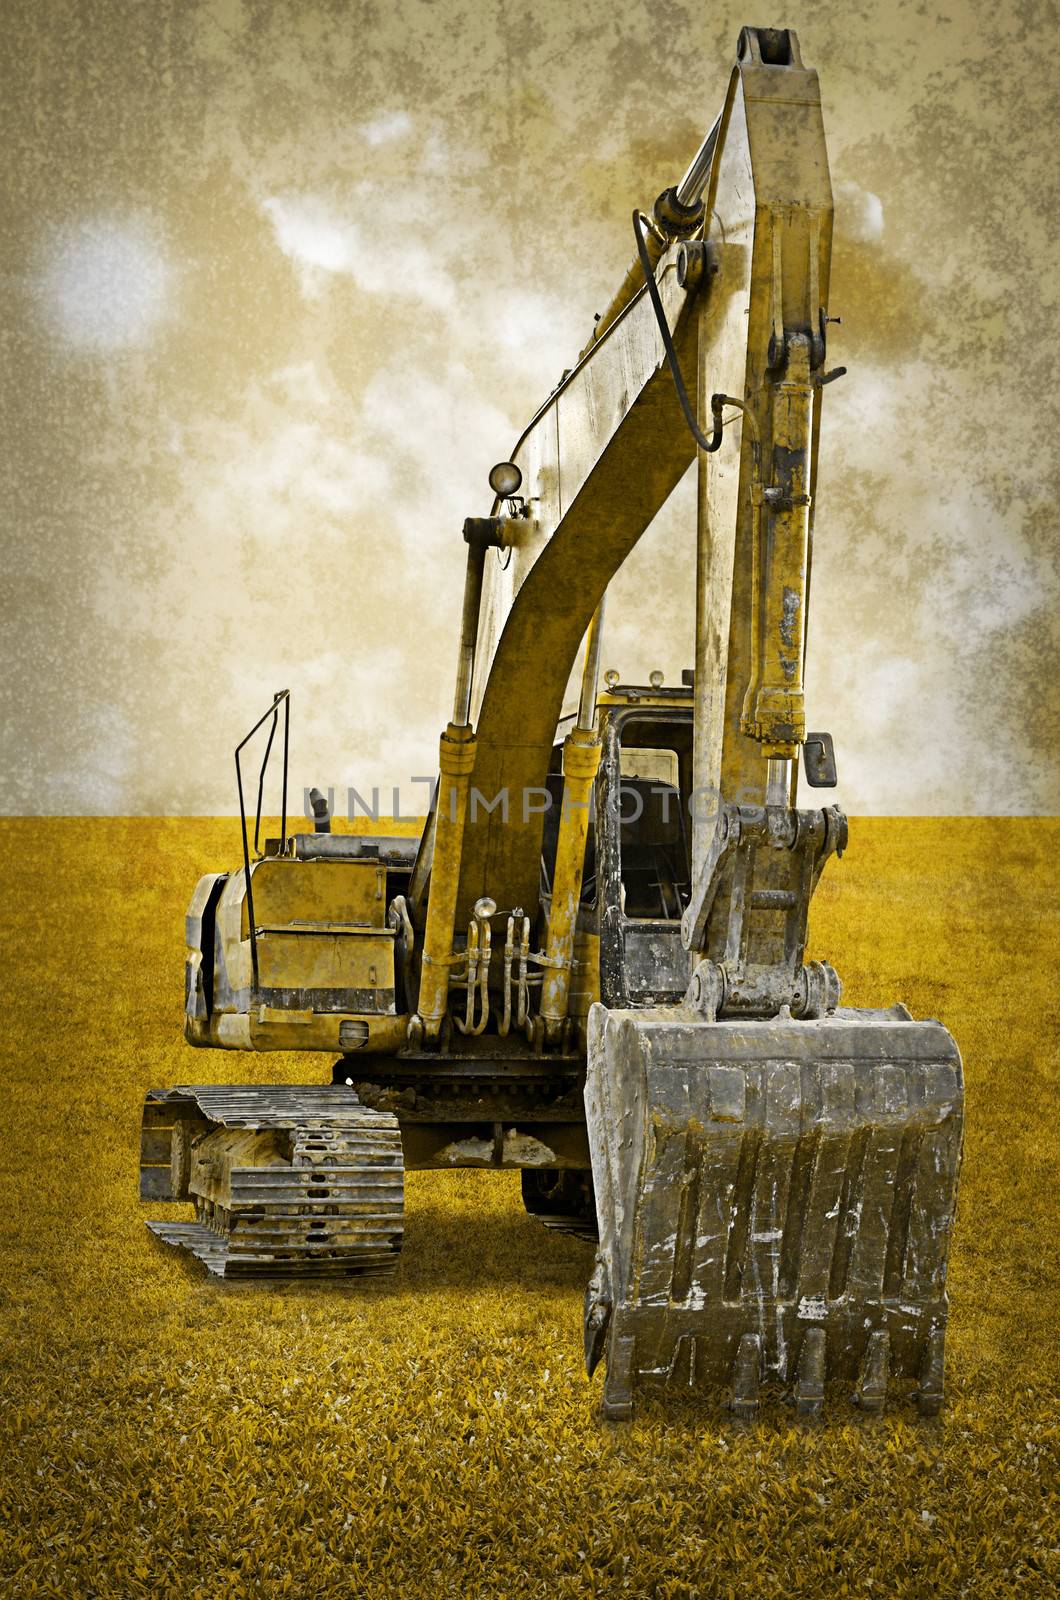 Track-type loader excavator machine on green grass field